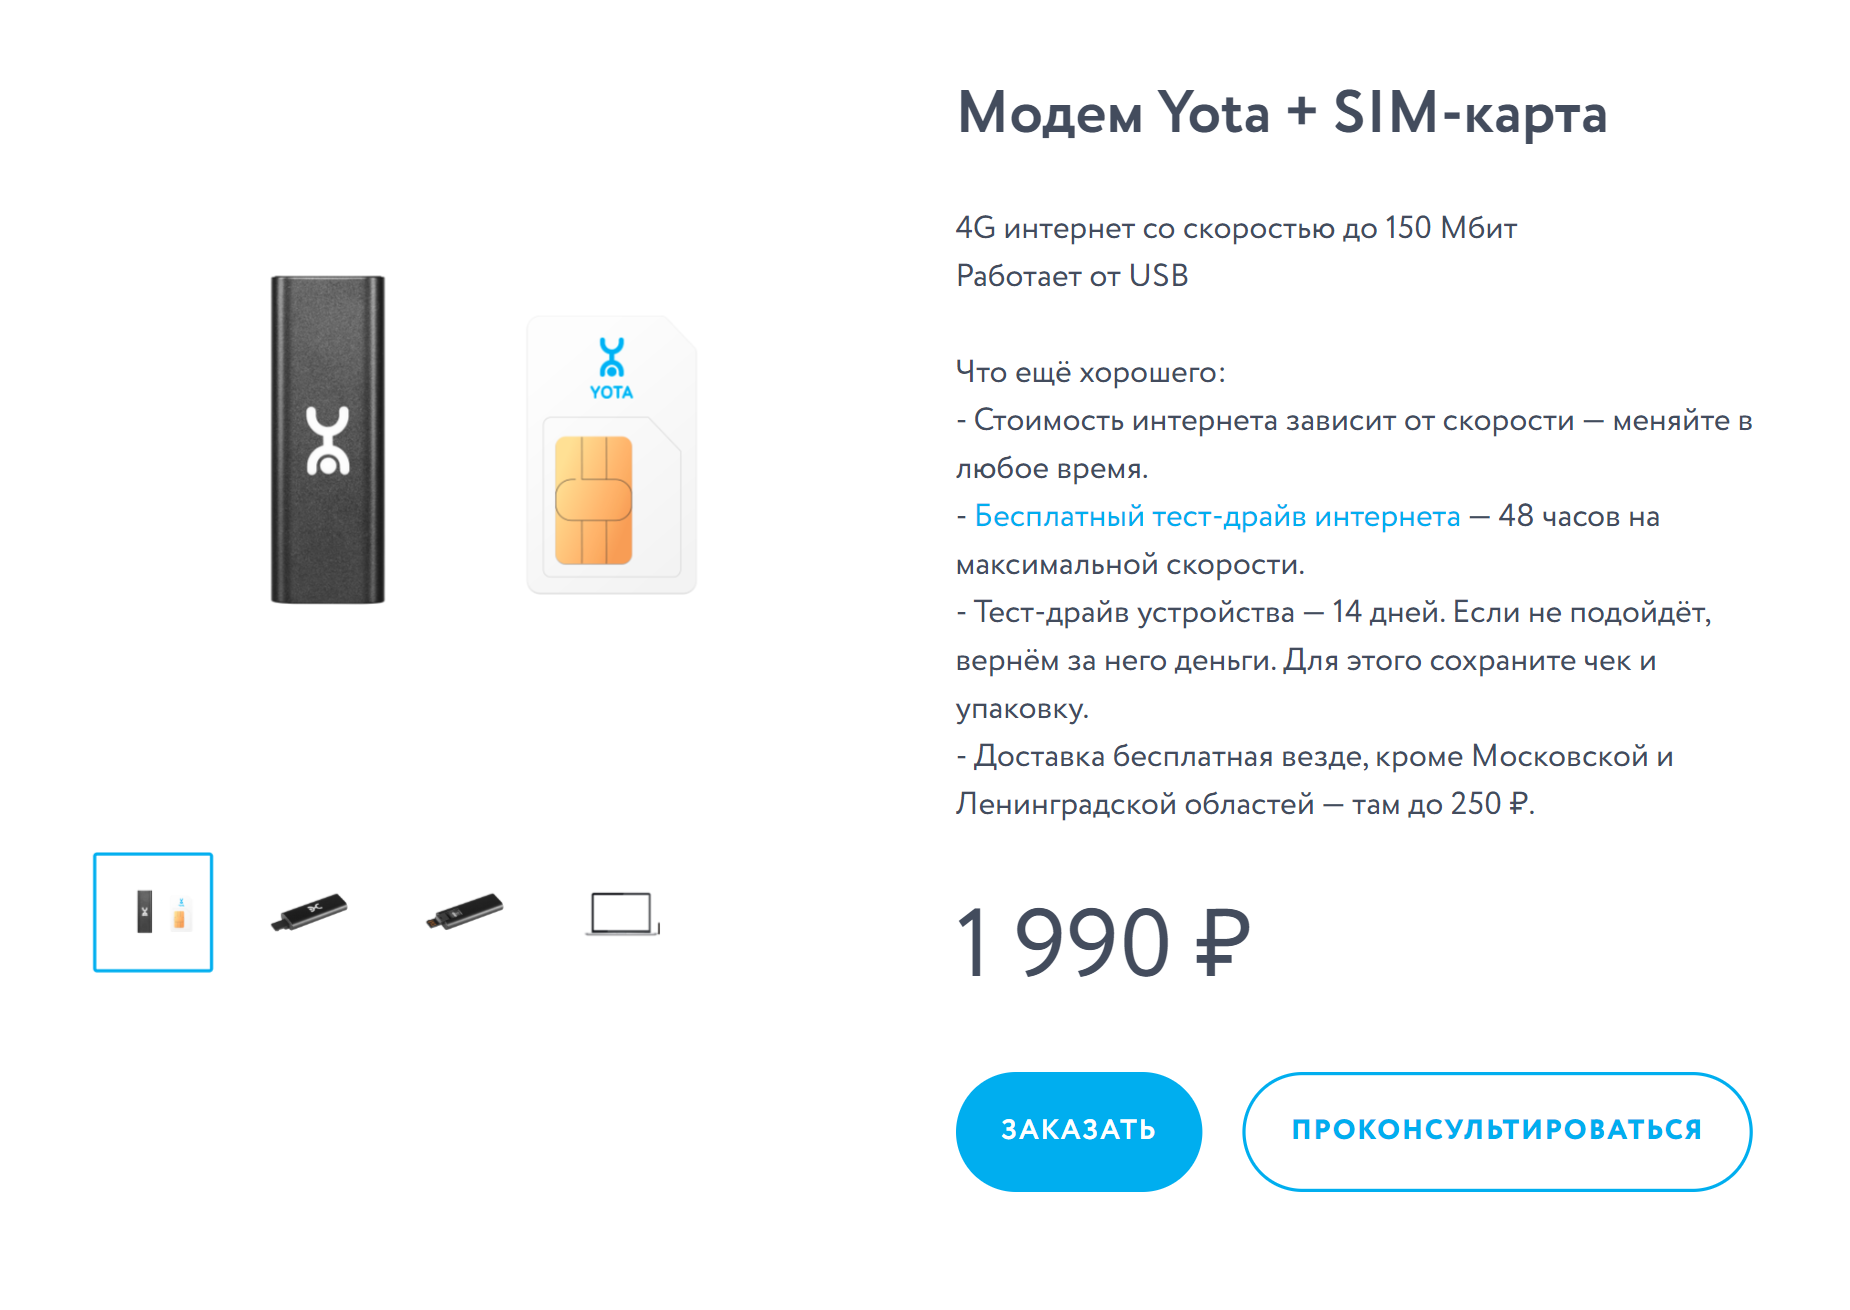 Все о мобильном интернете Win mobile в Крыму и Севастополе